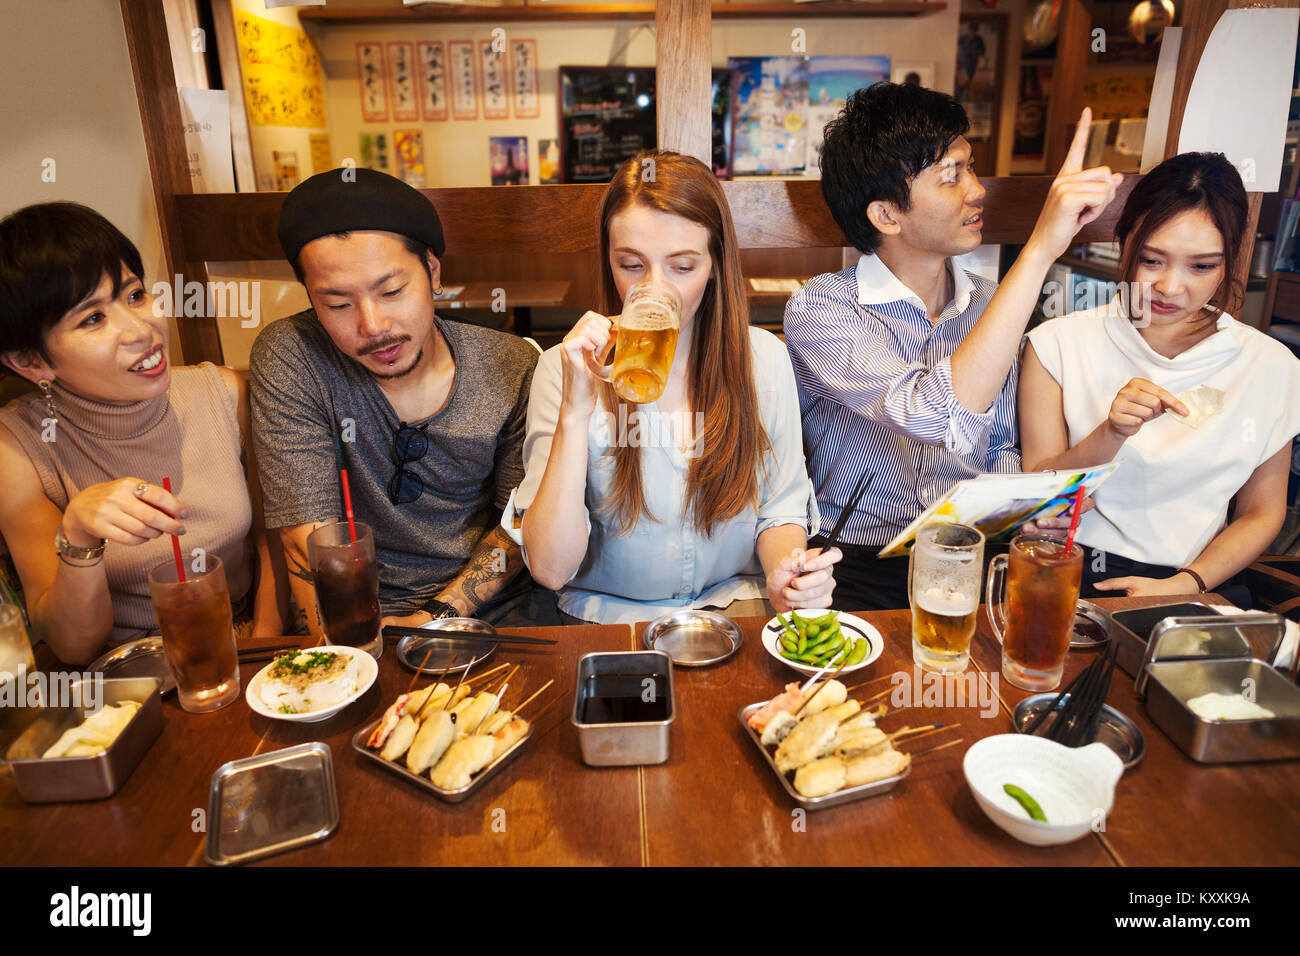 Cinq personnes assis à côté par sidy une table dans un restaurant, manger et boire de la bière. Banque D'Images